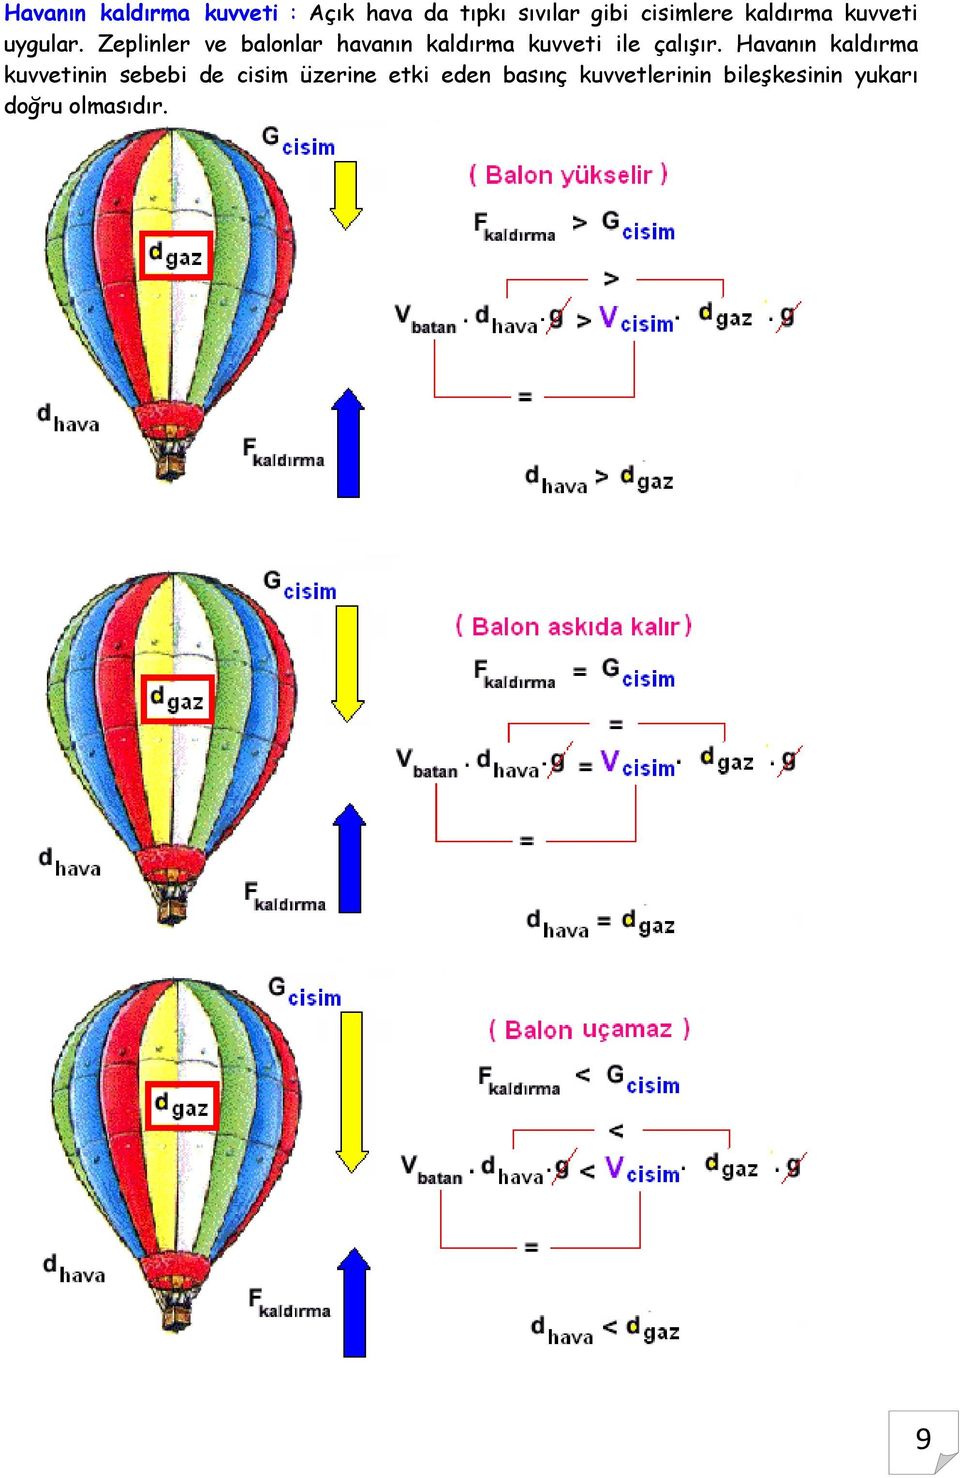 Zeplinler ve balonlar havanın kaldırma kuvveti ile çalışır.